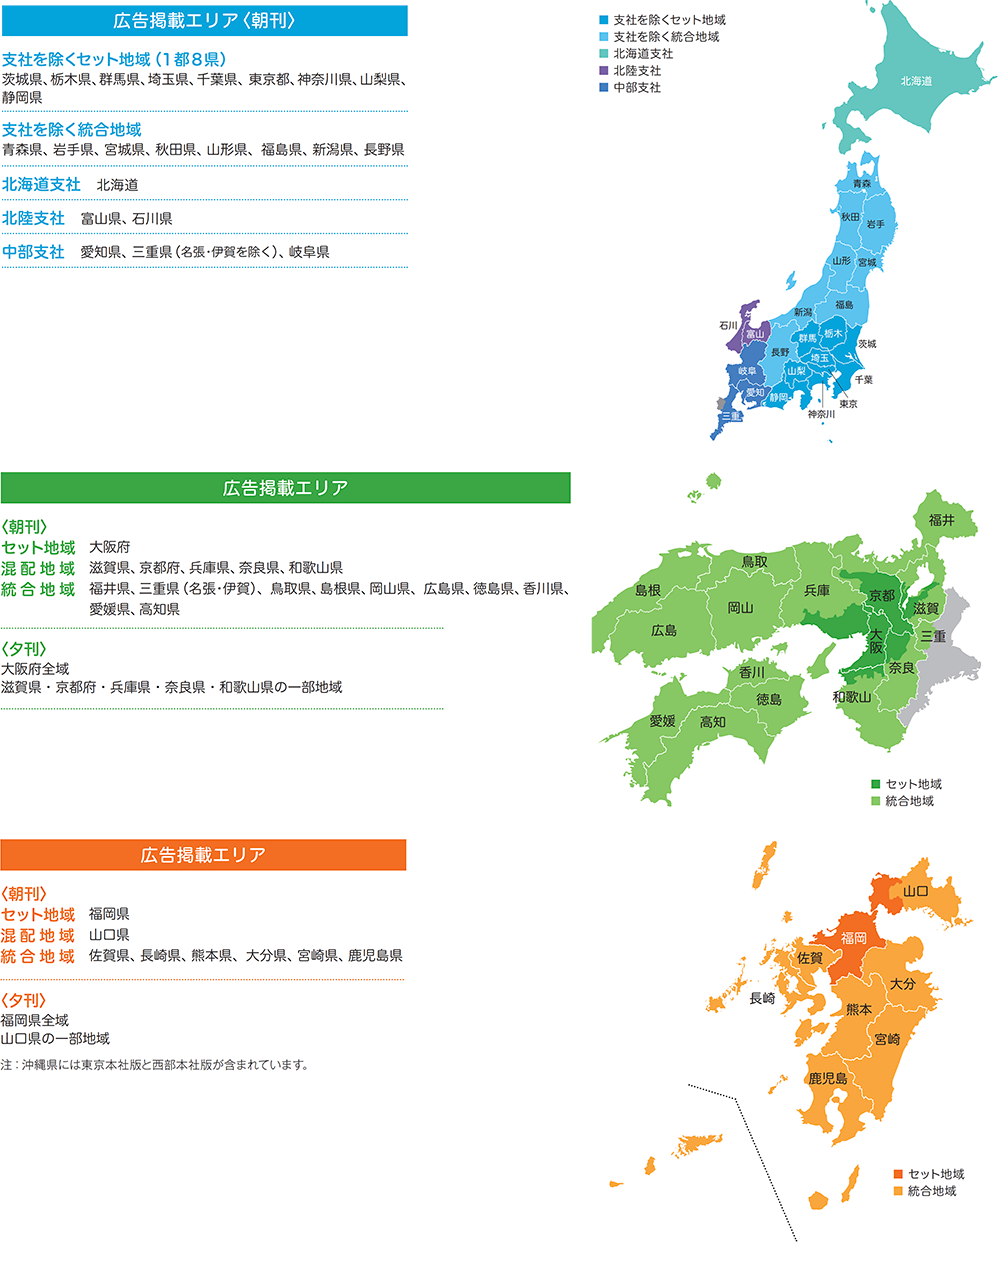 読売新聞配布地域エリアマップ